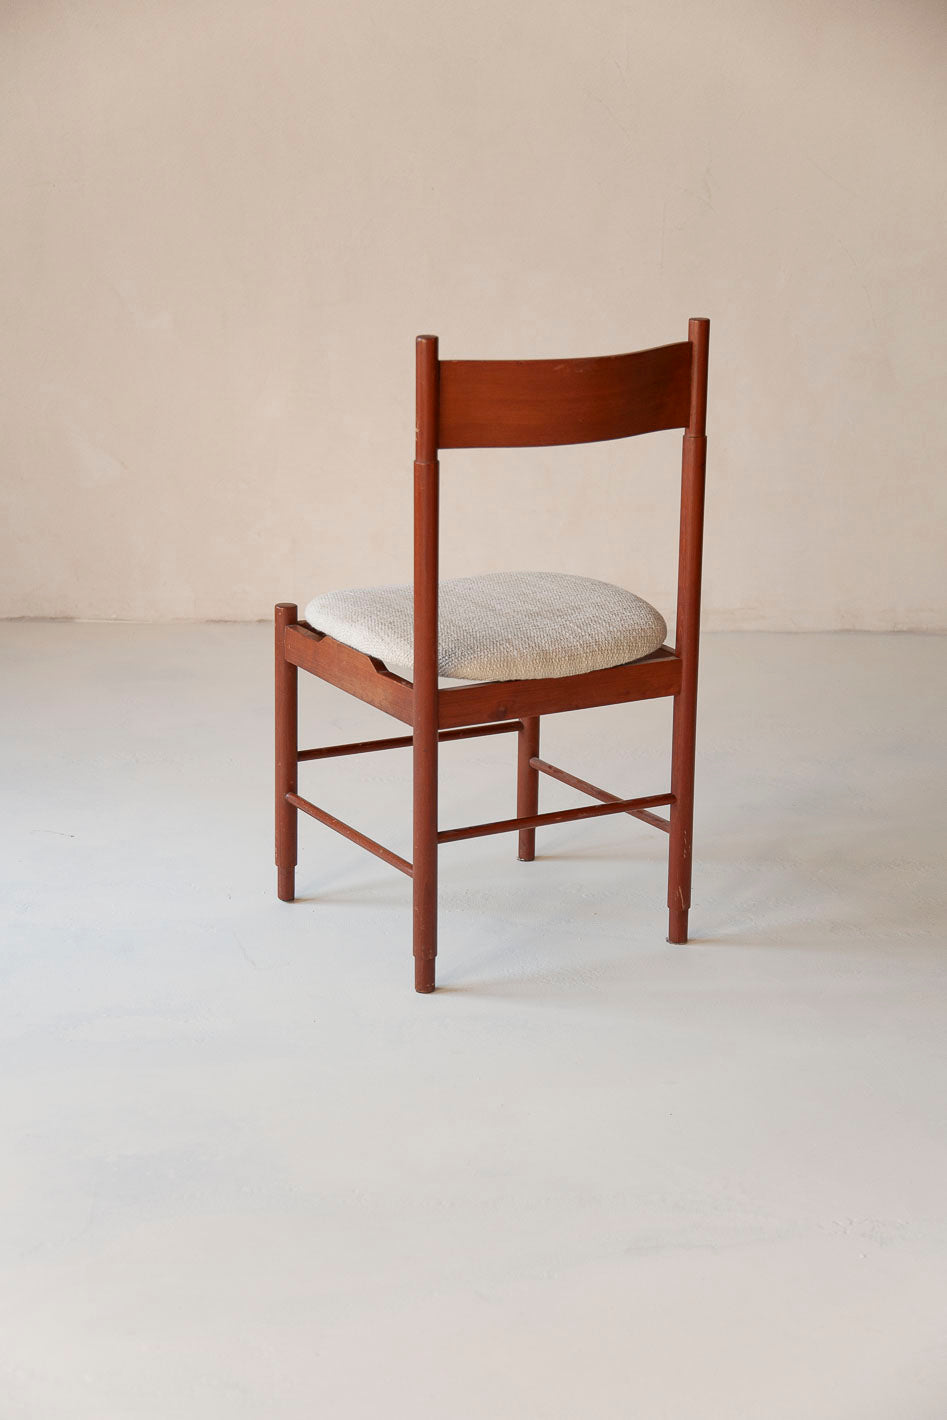 Suite de 8 chaises en teck italien des années 70